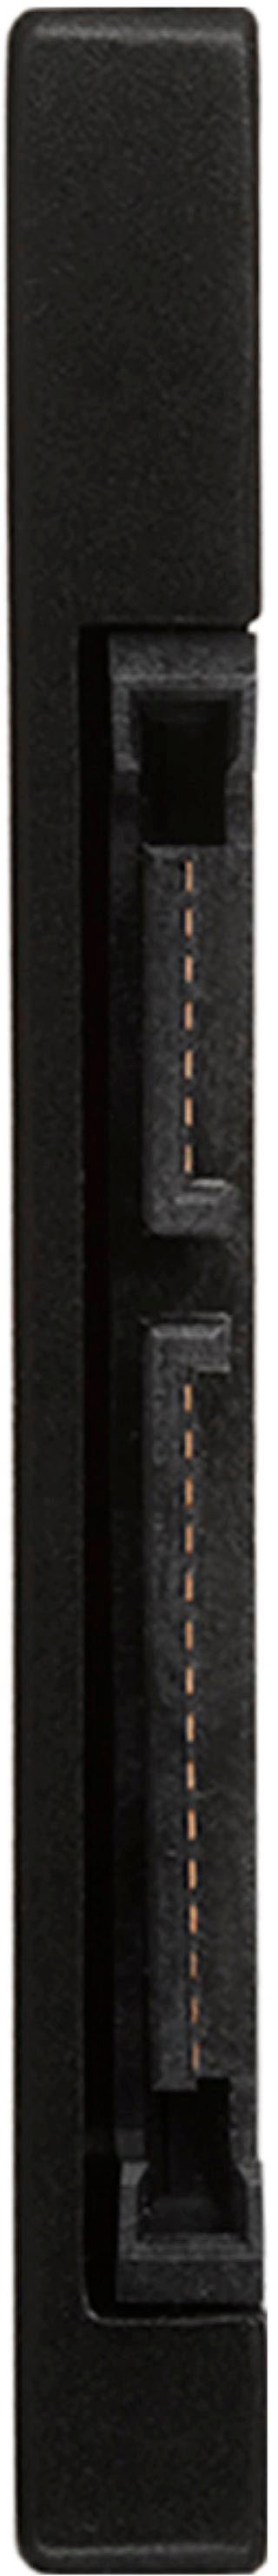 PNY CS900 1TB 3D NAND 2.5 SATA III Internal Solid State Drive (SSD) -  (SSD7CS900-1TB-RB) & SABRENT 3.5 Inch to x2 SSD / 2.5 Inch Internal Hard  Drive